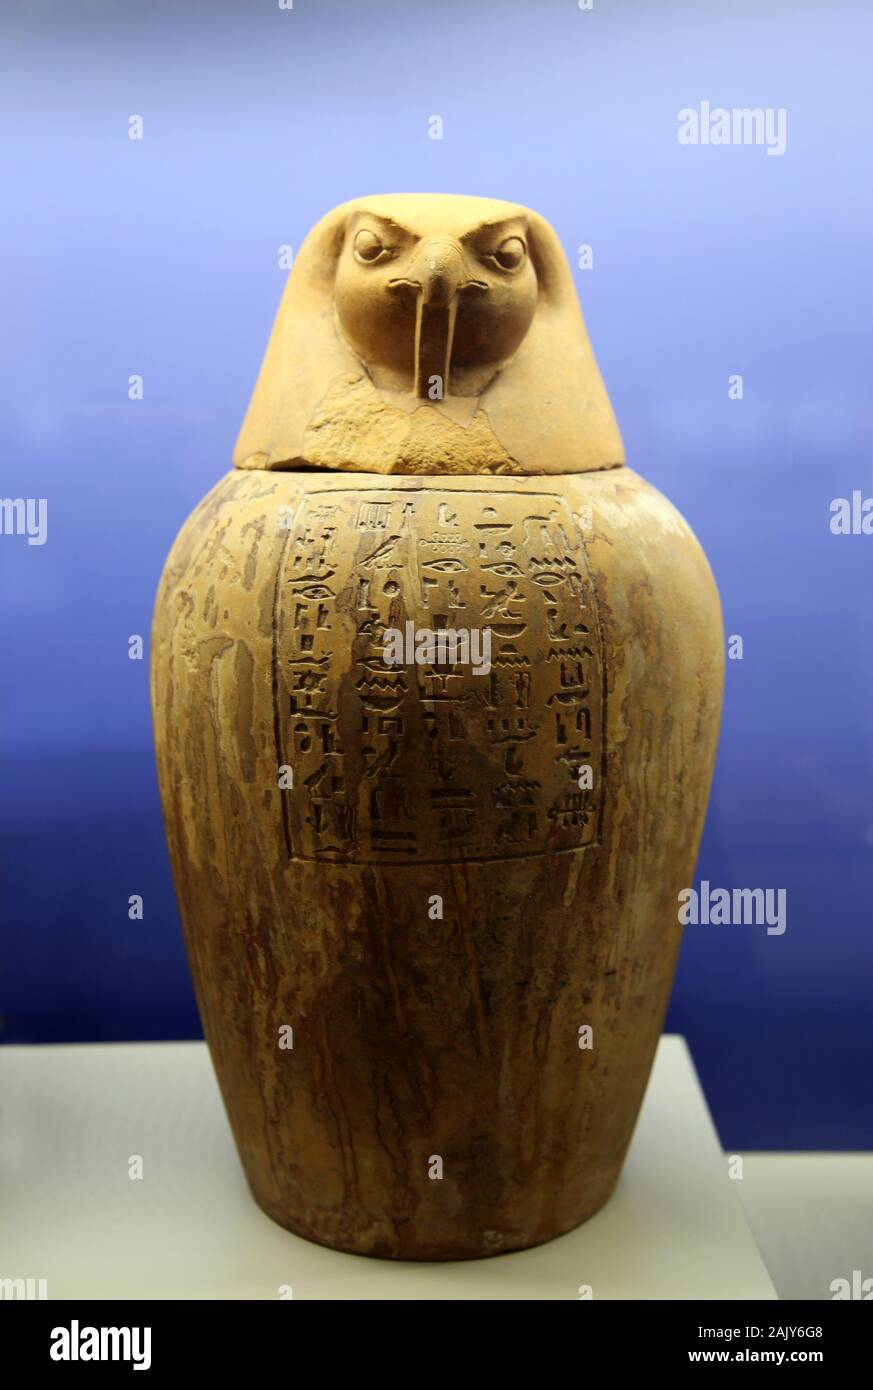 Pot de canopes Payeftjauemawyaset avec Horus tête. La pierre calcaire. L'Egypte, 26e dynastie (664-525BC). Picchianti Collection. Musée de Naples. L'Italie. Banque D'Images